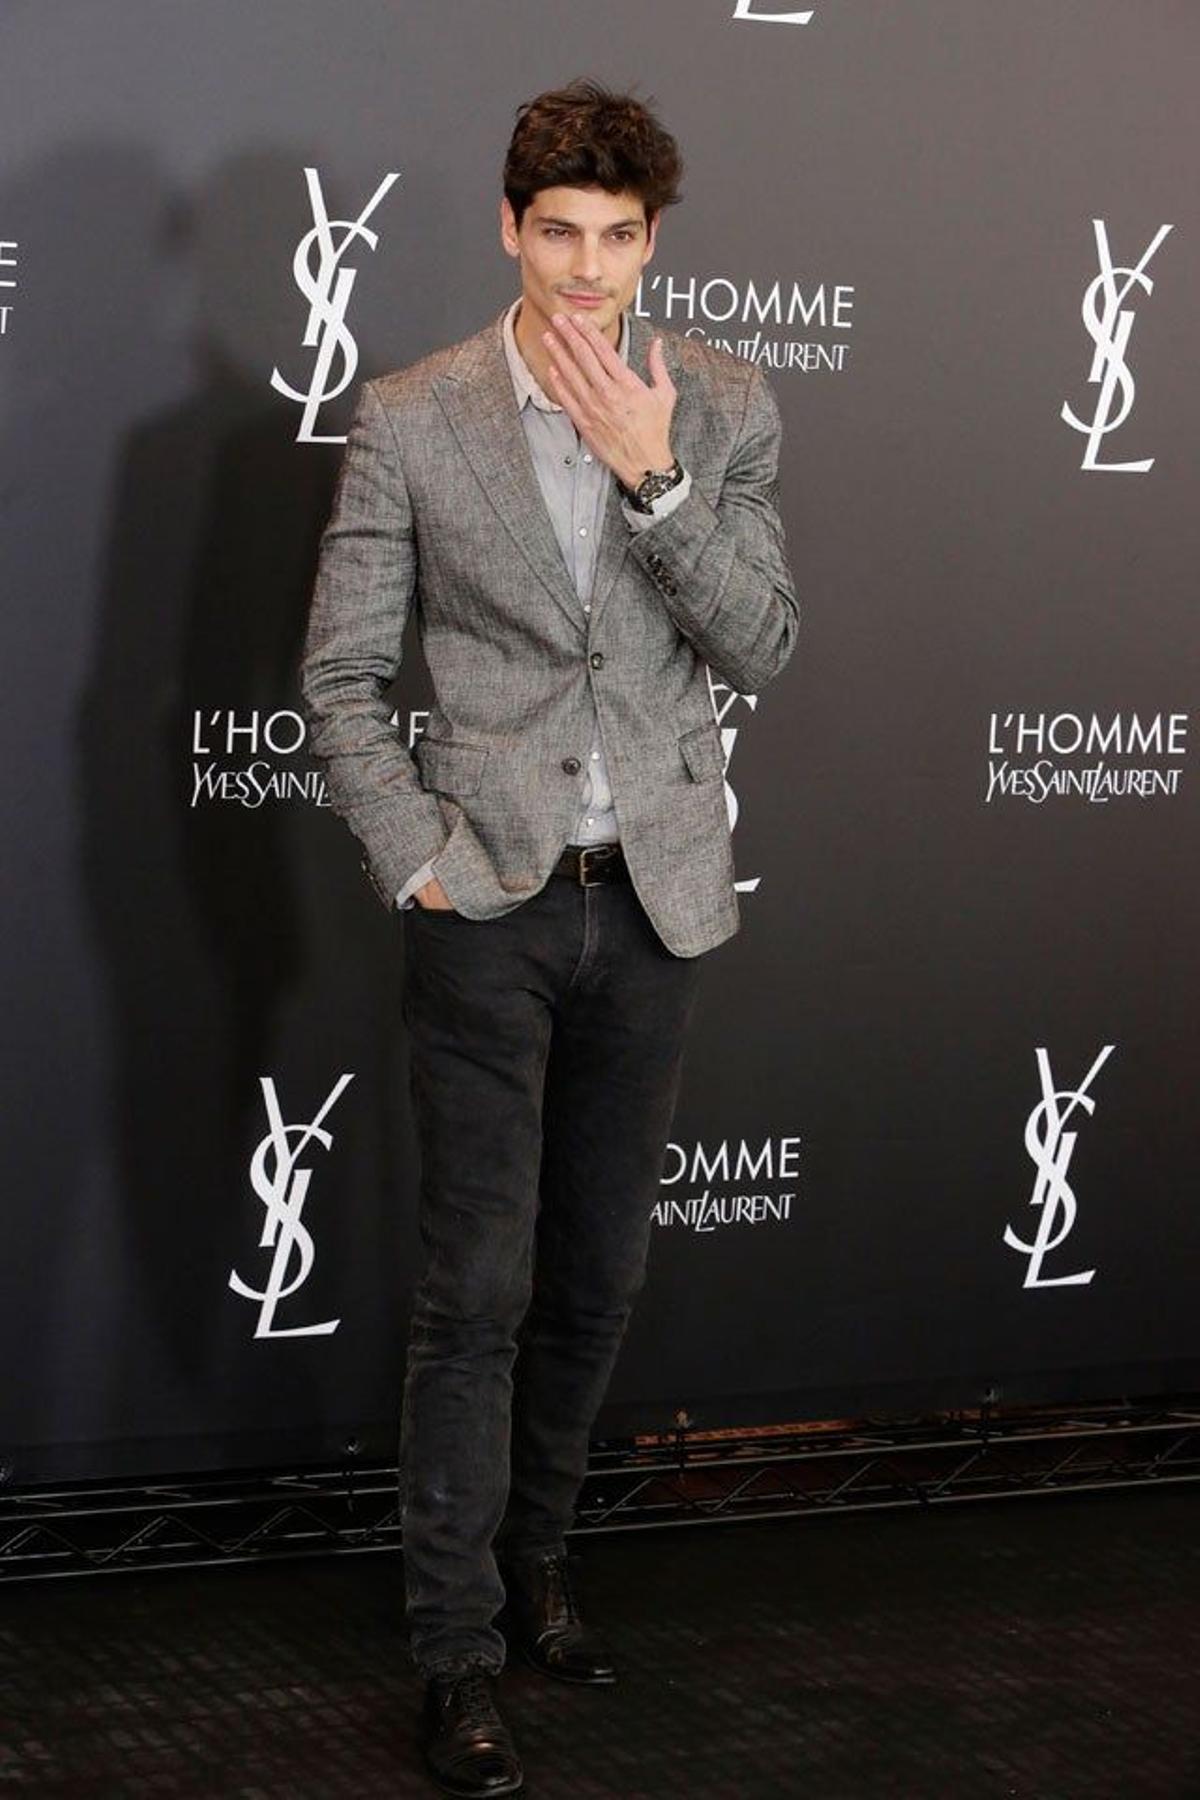 Javier de Miguel, en la fiesta de aniversario L'Homme de Yves Saint Laurent.